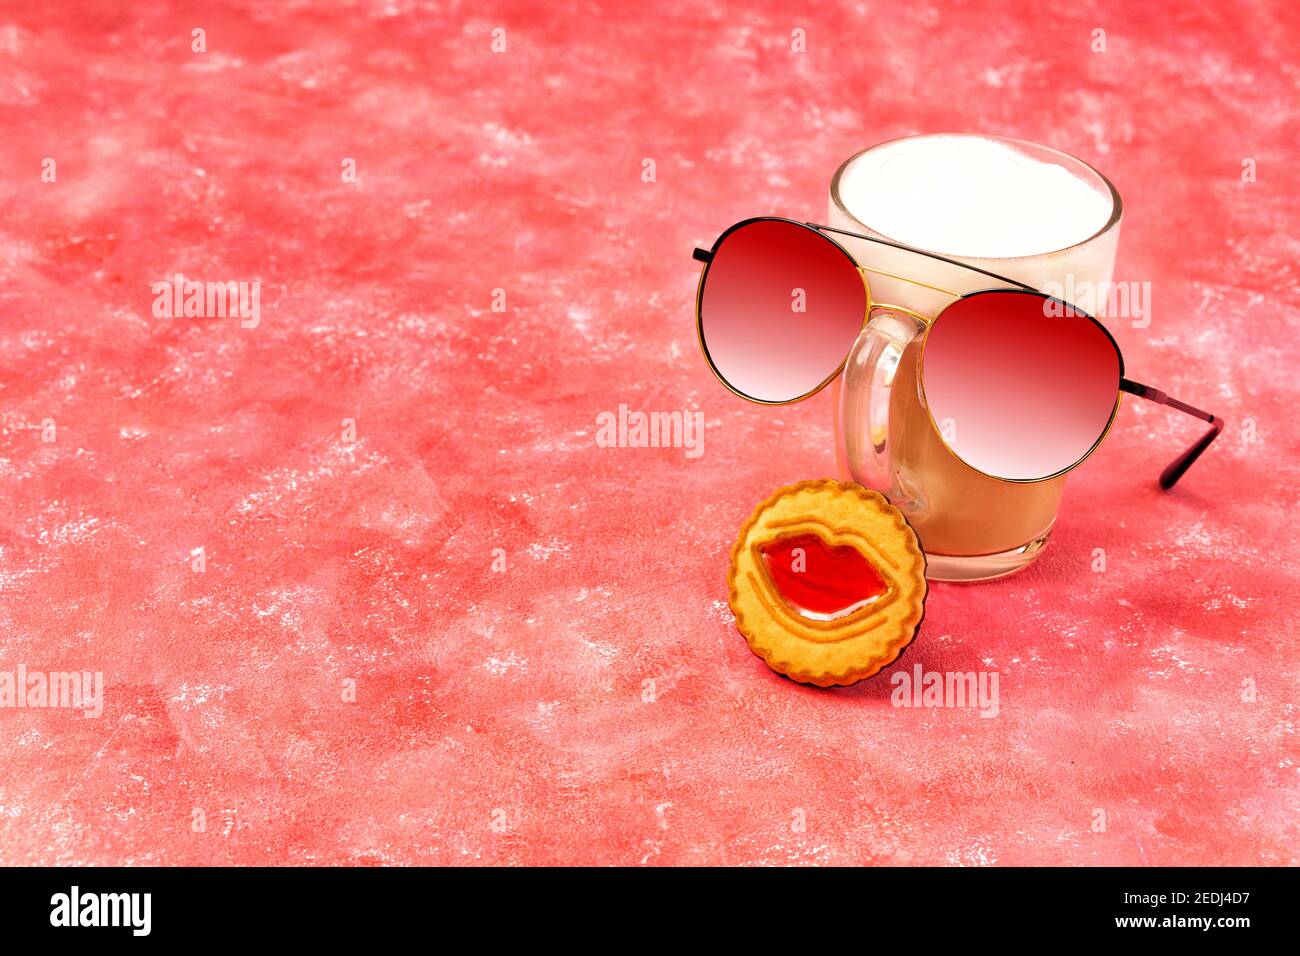 Composition amusante composée d'un verre de cappuccino, de lunettes de soleil et d'un biscuit avec des lèvres de gelée sur fond rose. Banque D'Images